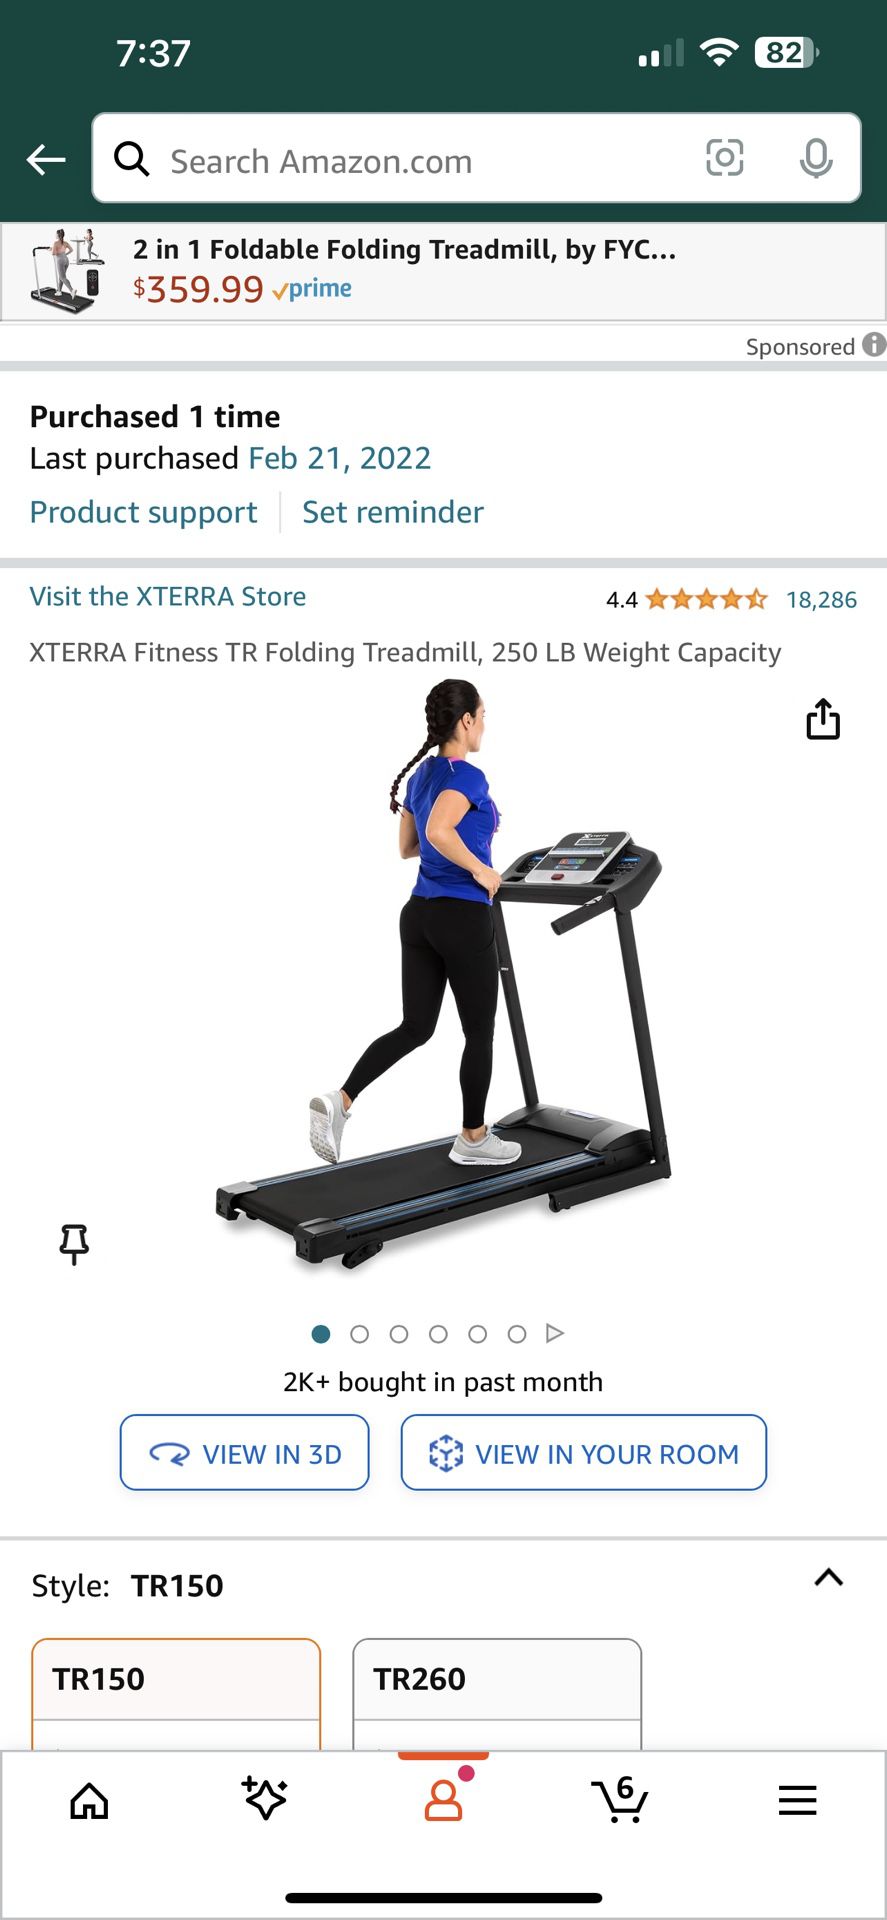 Xterra Fitness TR Folding Treadmill, 250 Lbs